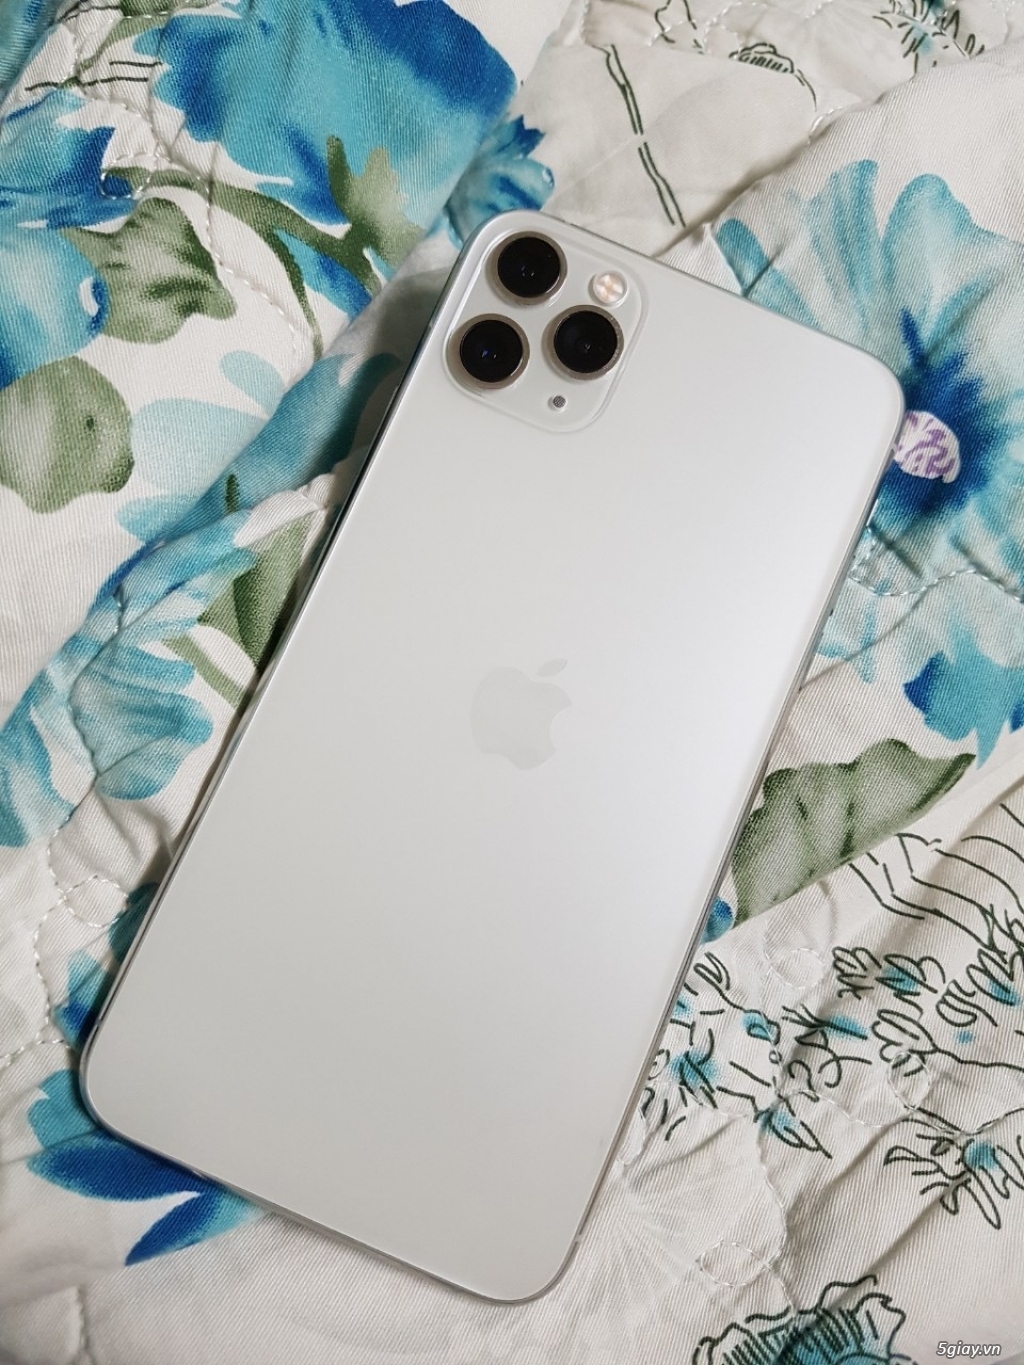 Sở hữu chiếc điện thoại đẳng cấp nhưng vẫn vô cùng tinh tế với màu trắng của iPhone 11 Pro Max. Thiết kế sang trọng, hiệu năng mạnh mẽ cùng camera chụp ảnh siêu phẩm, đây là lựa chọn hoàn hảo dành cho những người yêu thích công nghệ và thị hiếu thẩm mĩ cao.